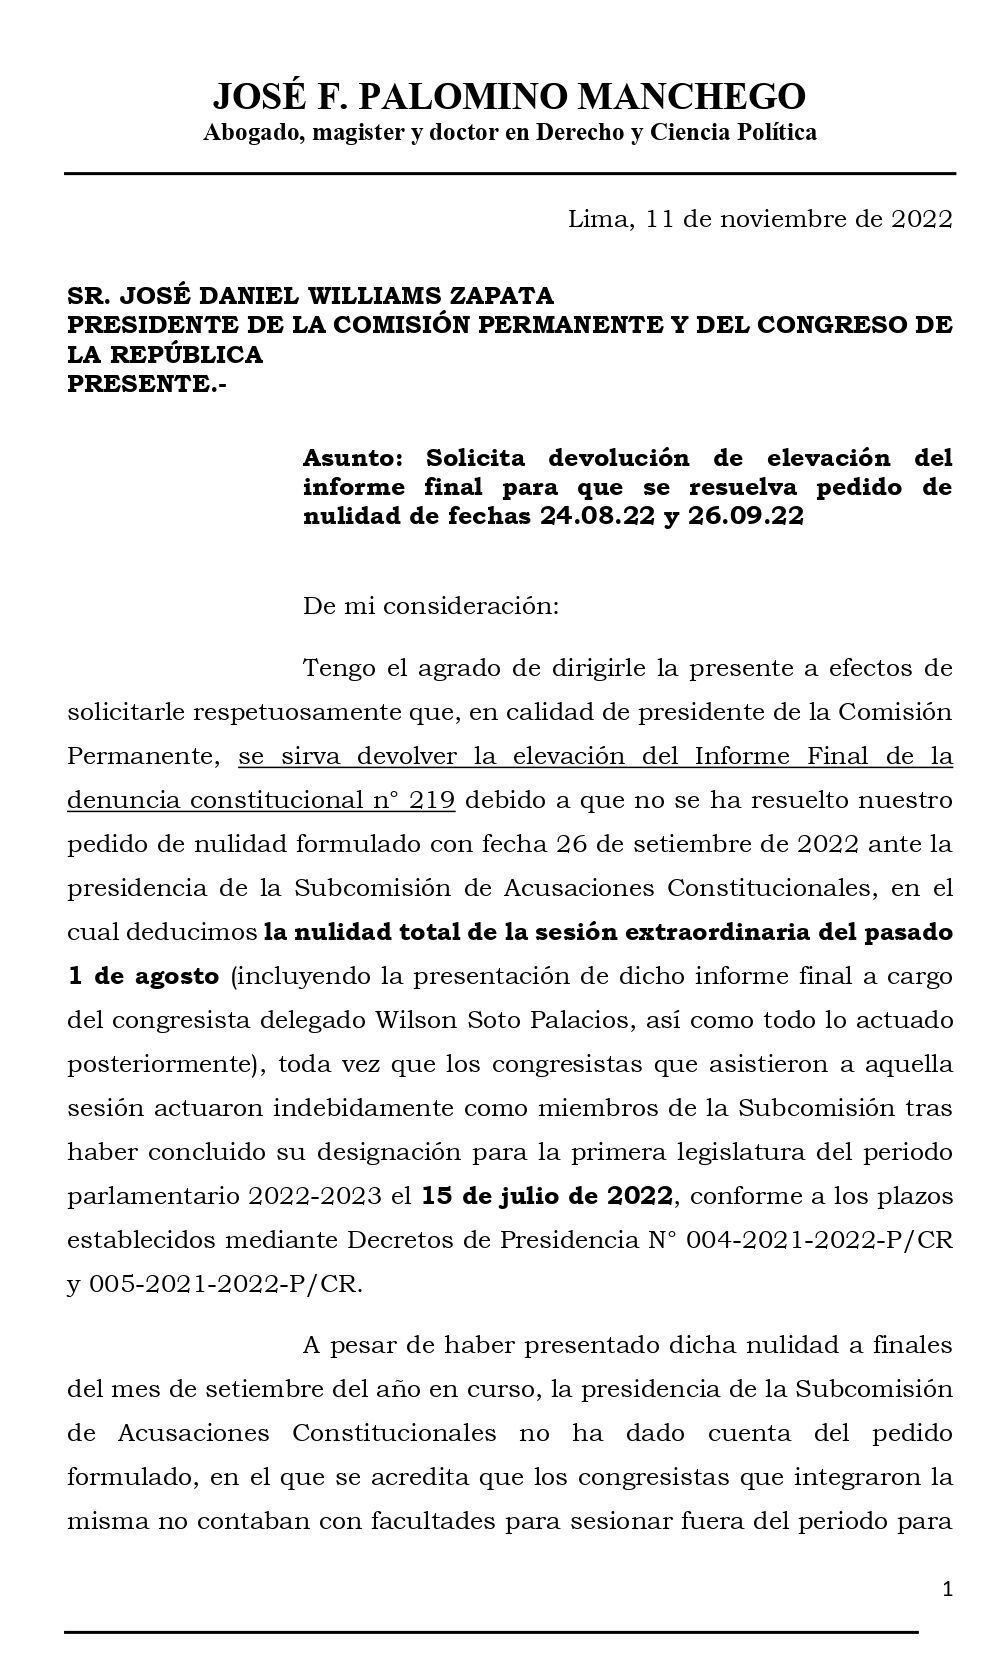 Documento remitido por el abogado de Pedro Castillo al presidente del Congreso.